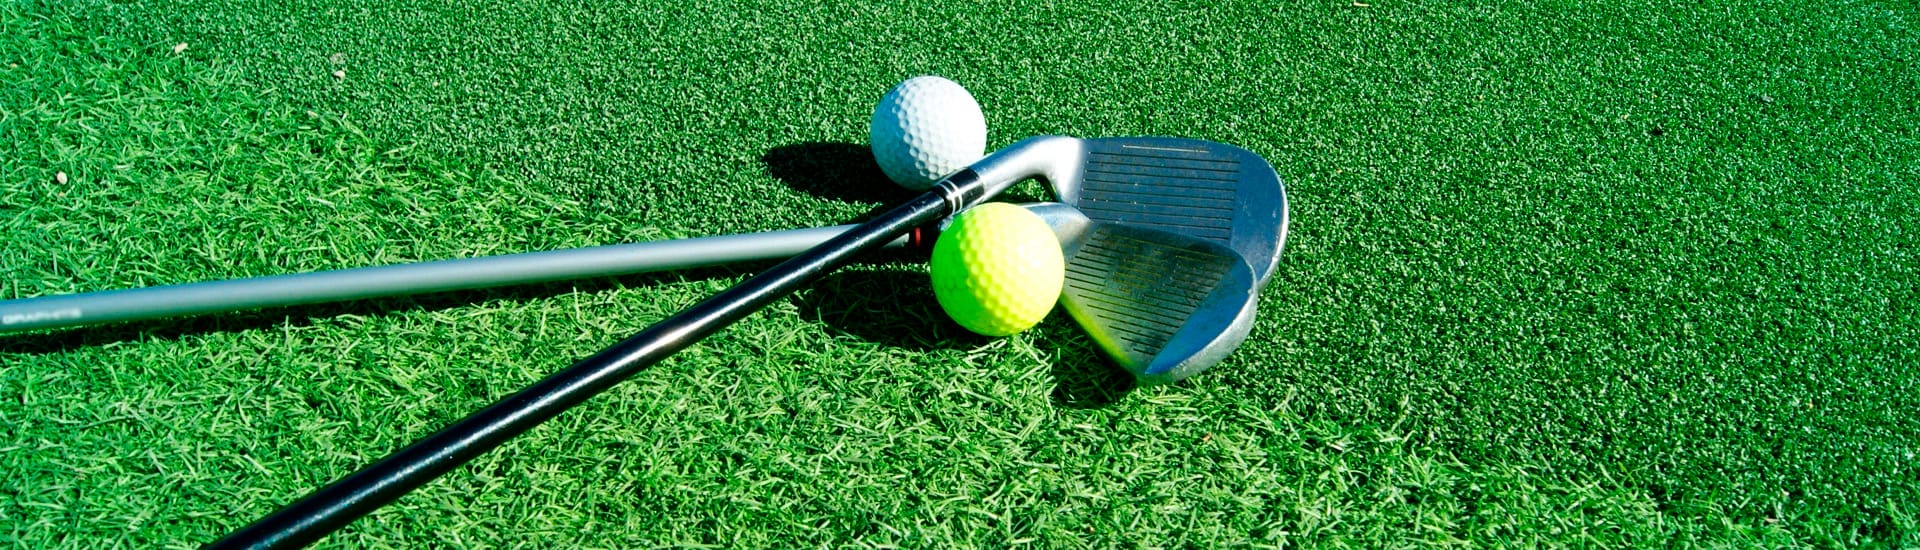 Modelos de grama artificial para golf